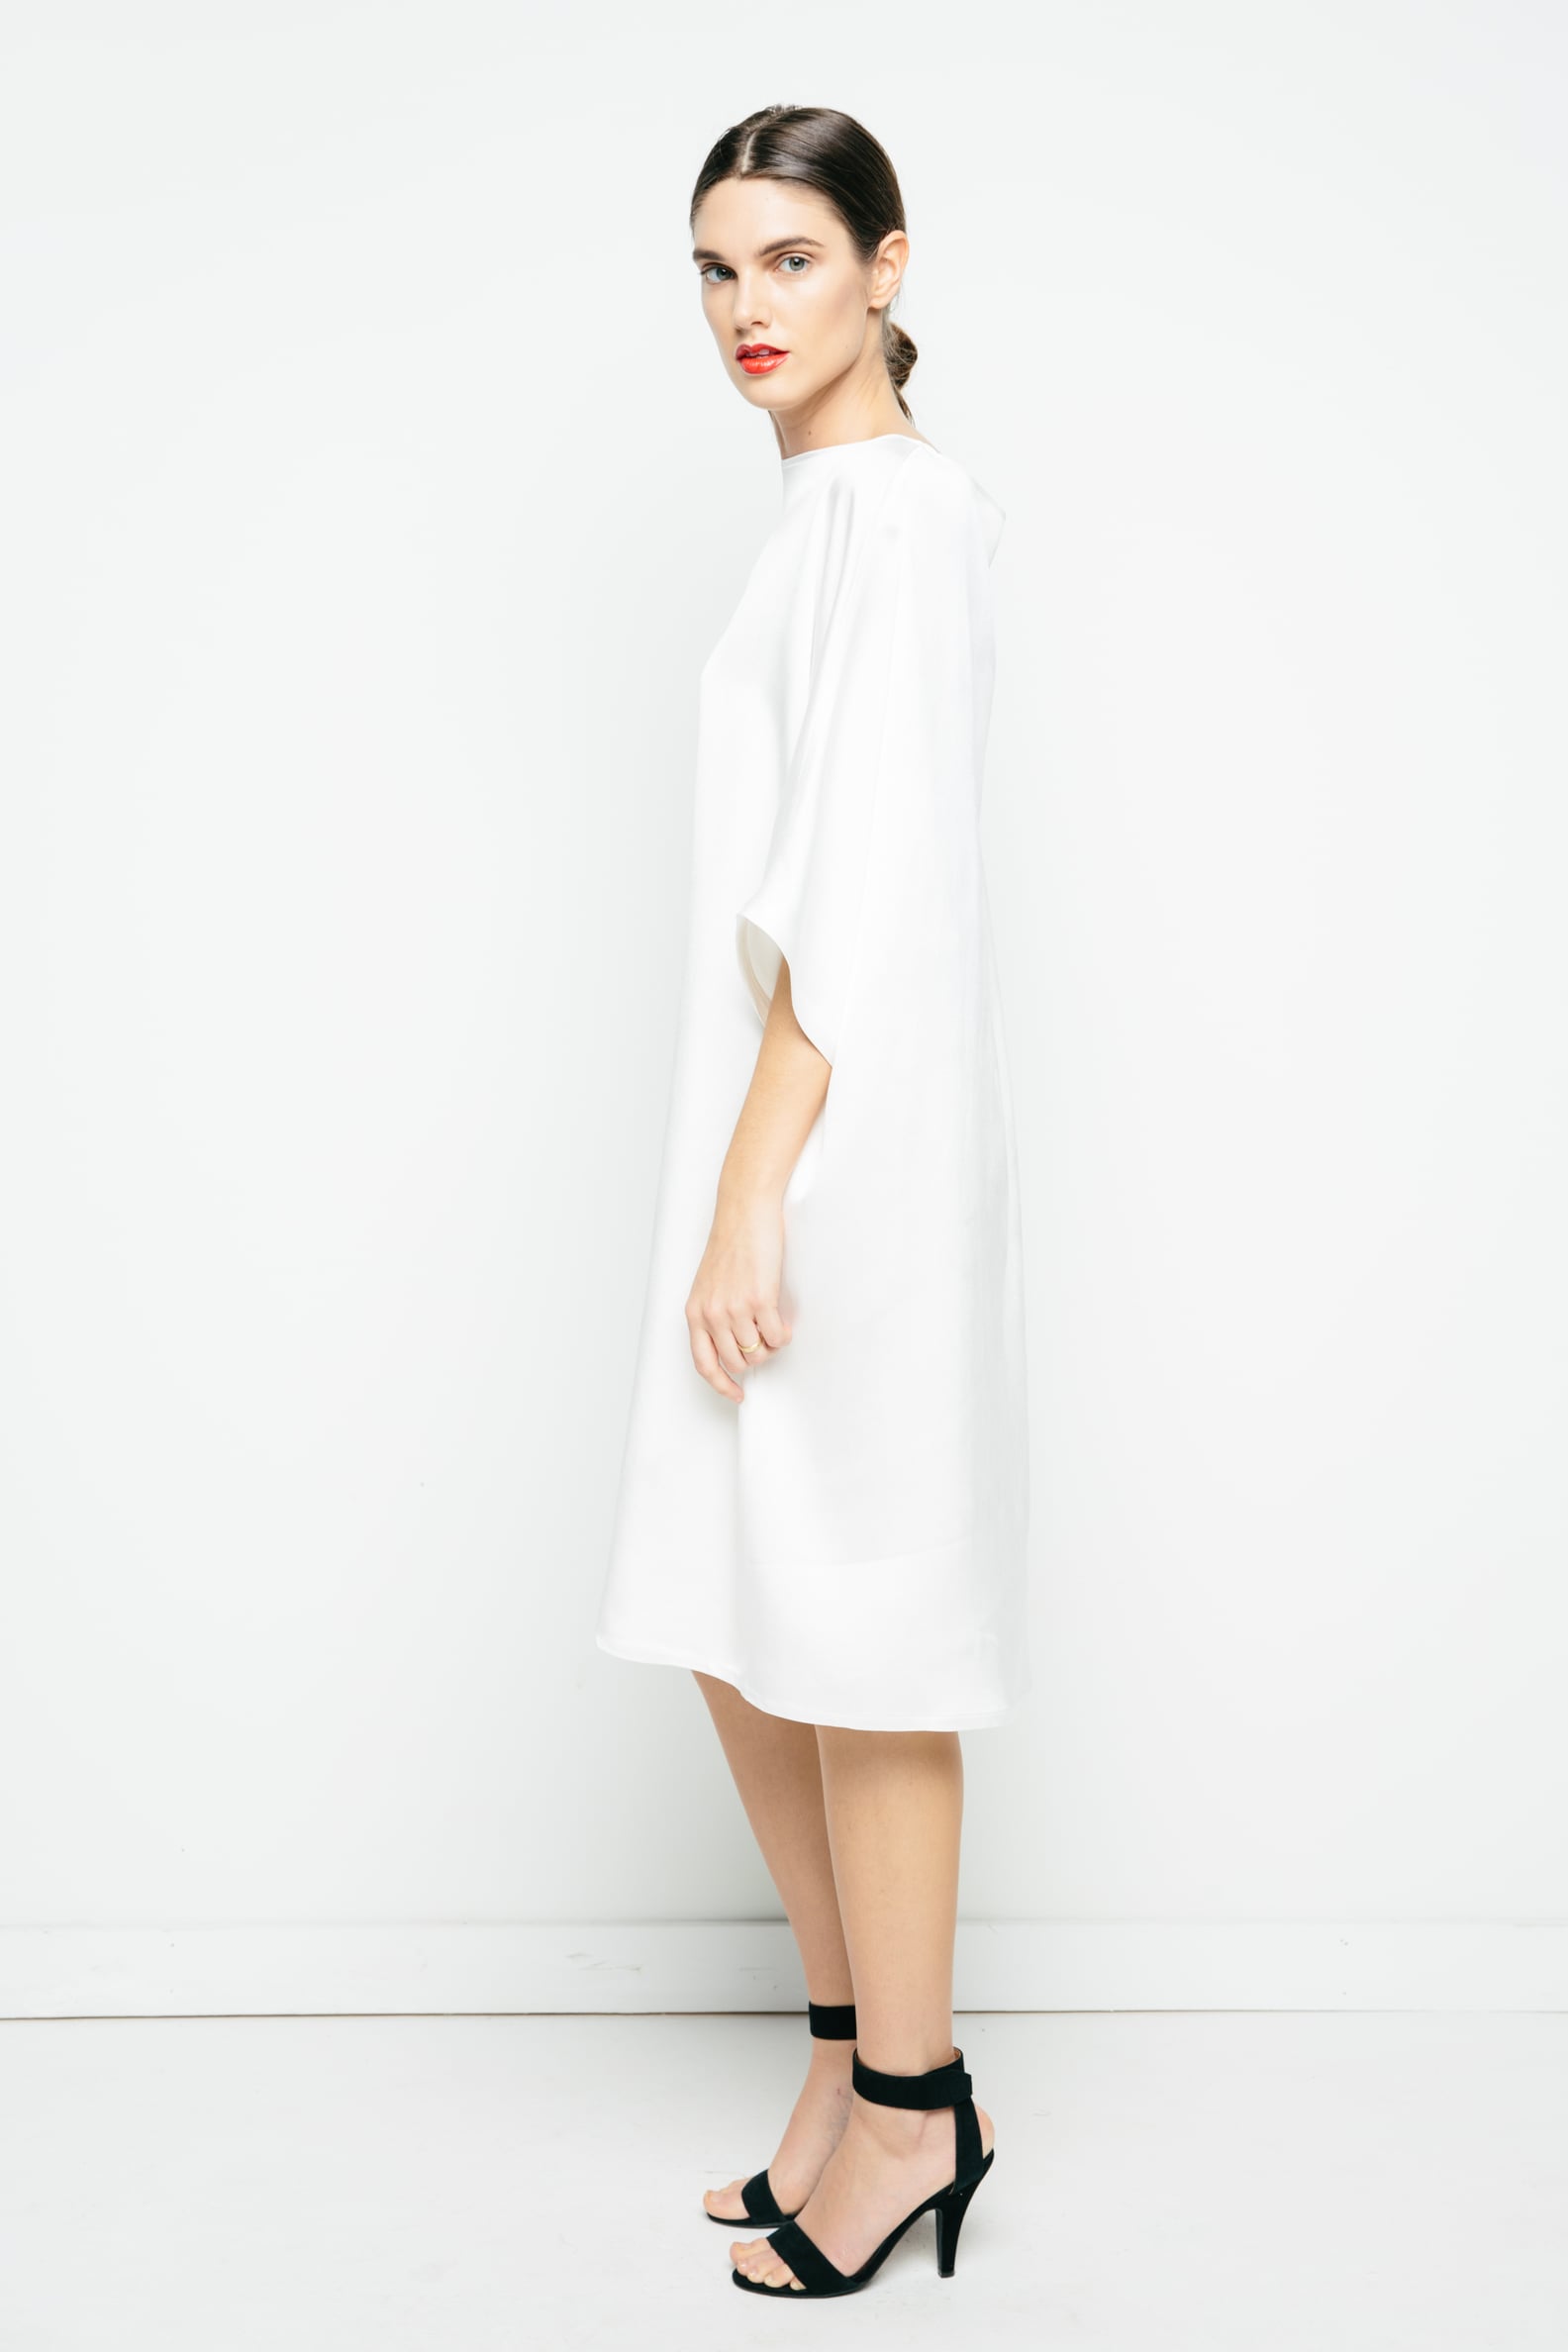 Elizabeth Suzann's Simple Affordable Wedding Dresses | POPSUGAR Fashion